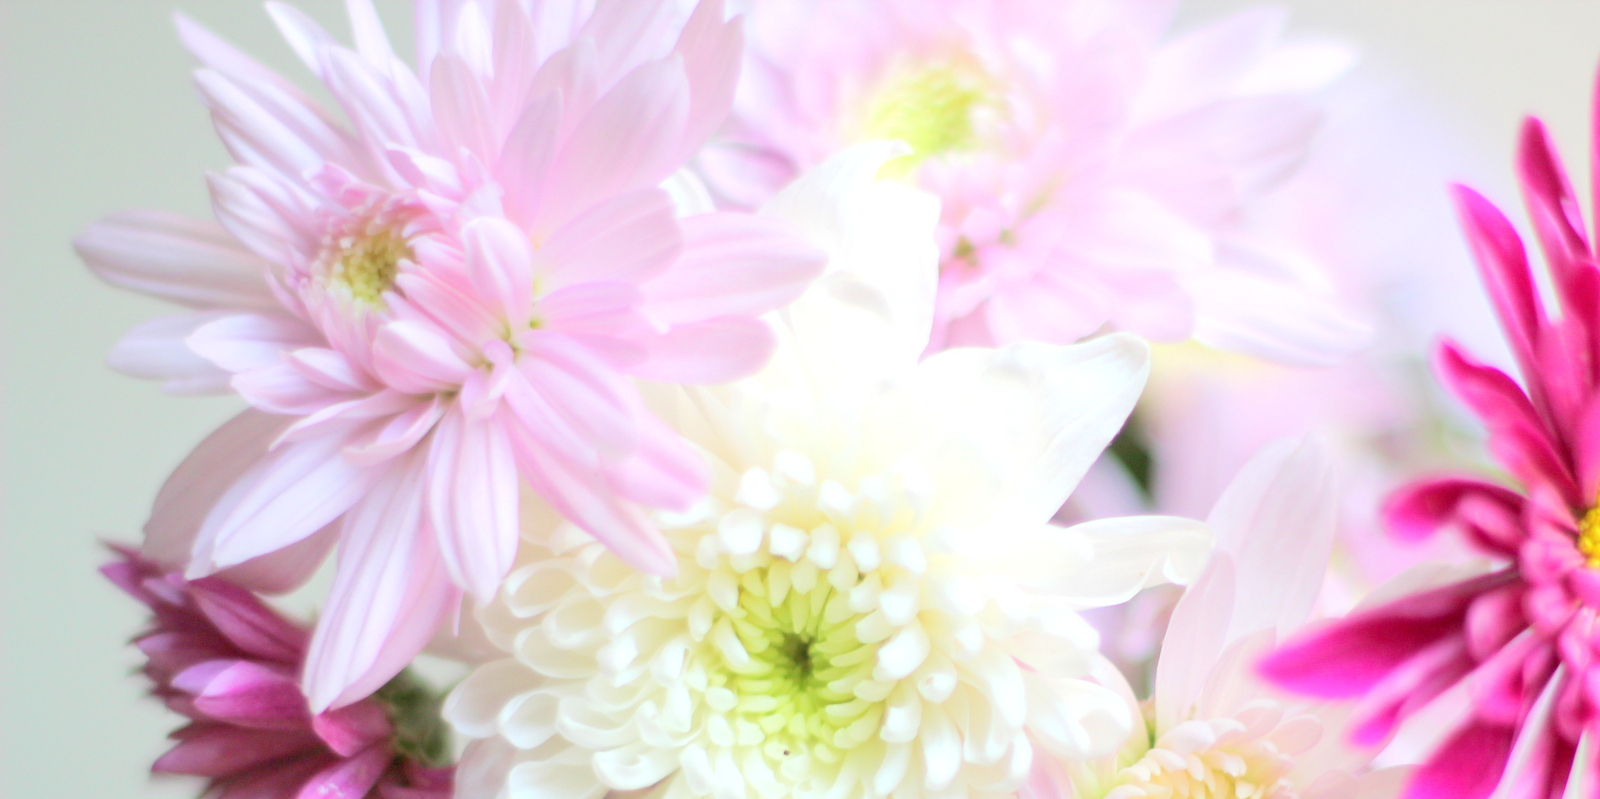 פרח דליה Dahlia בלוג עיצוב מיס גרות צילום לירון גונן (2)